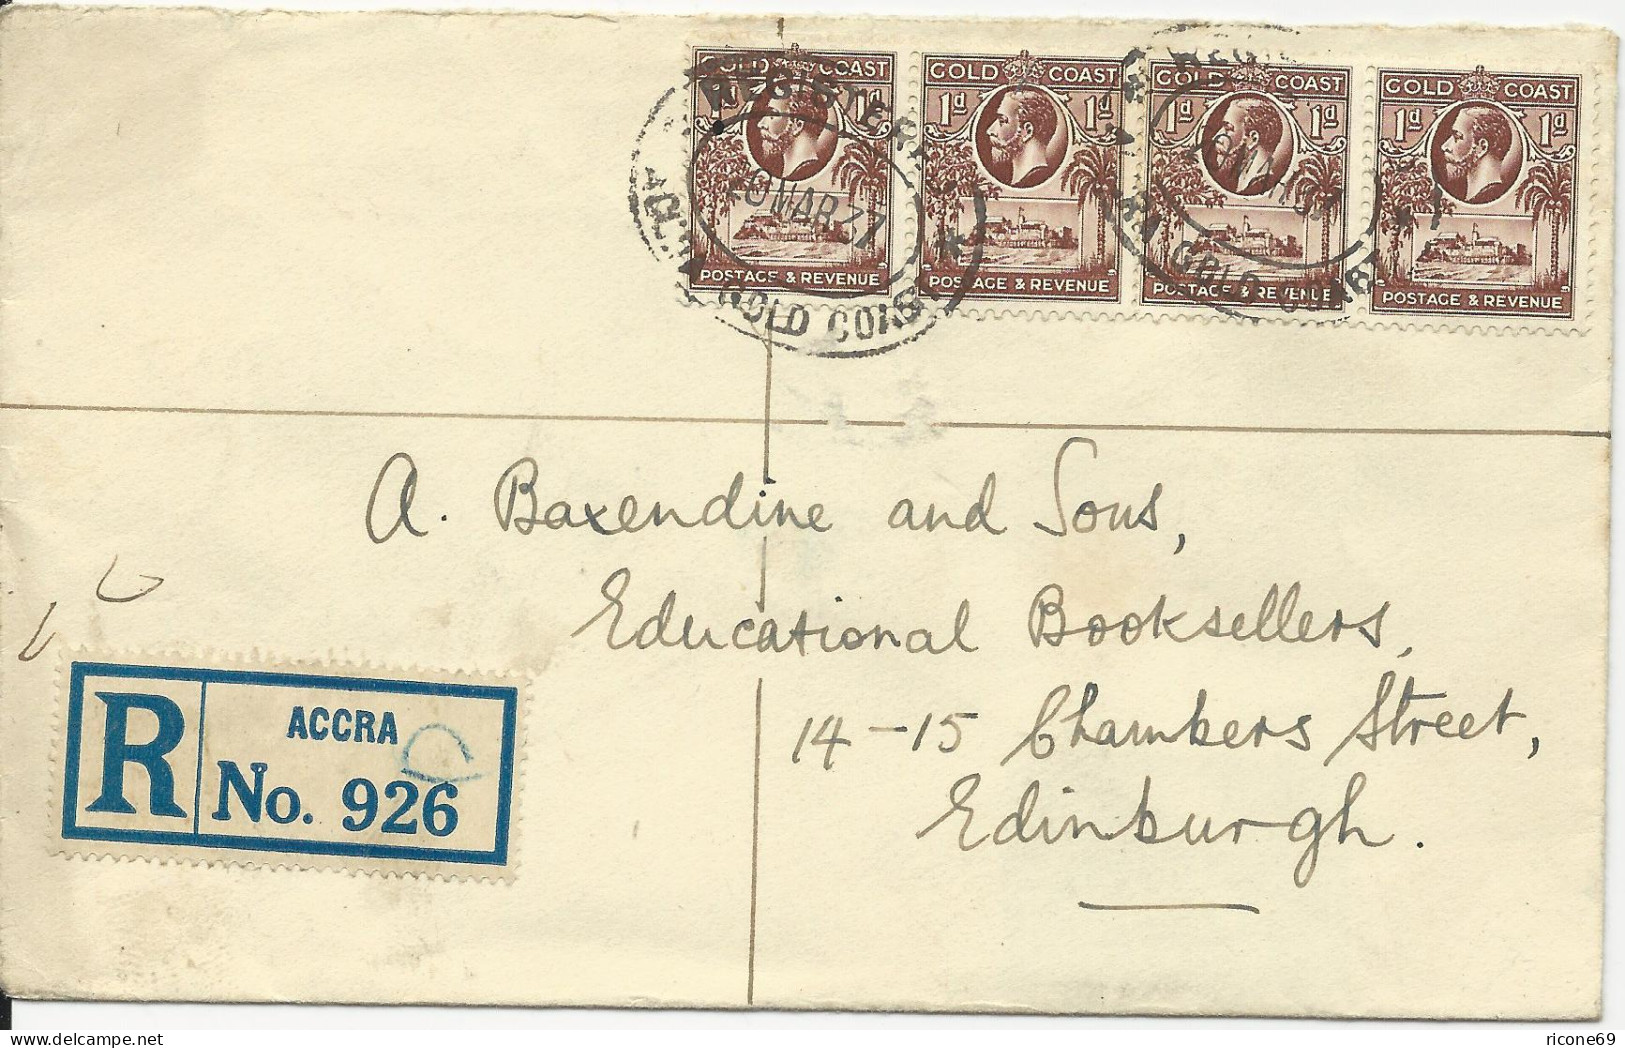 Gold Coast 1937, 4x1d Auf Einschreiben Brief V. Accra N. GB - Sonstige - Afrika